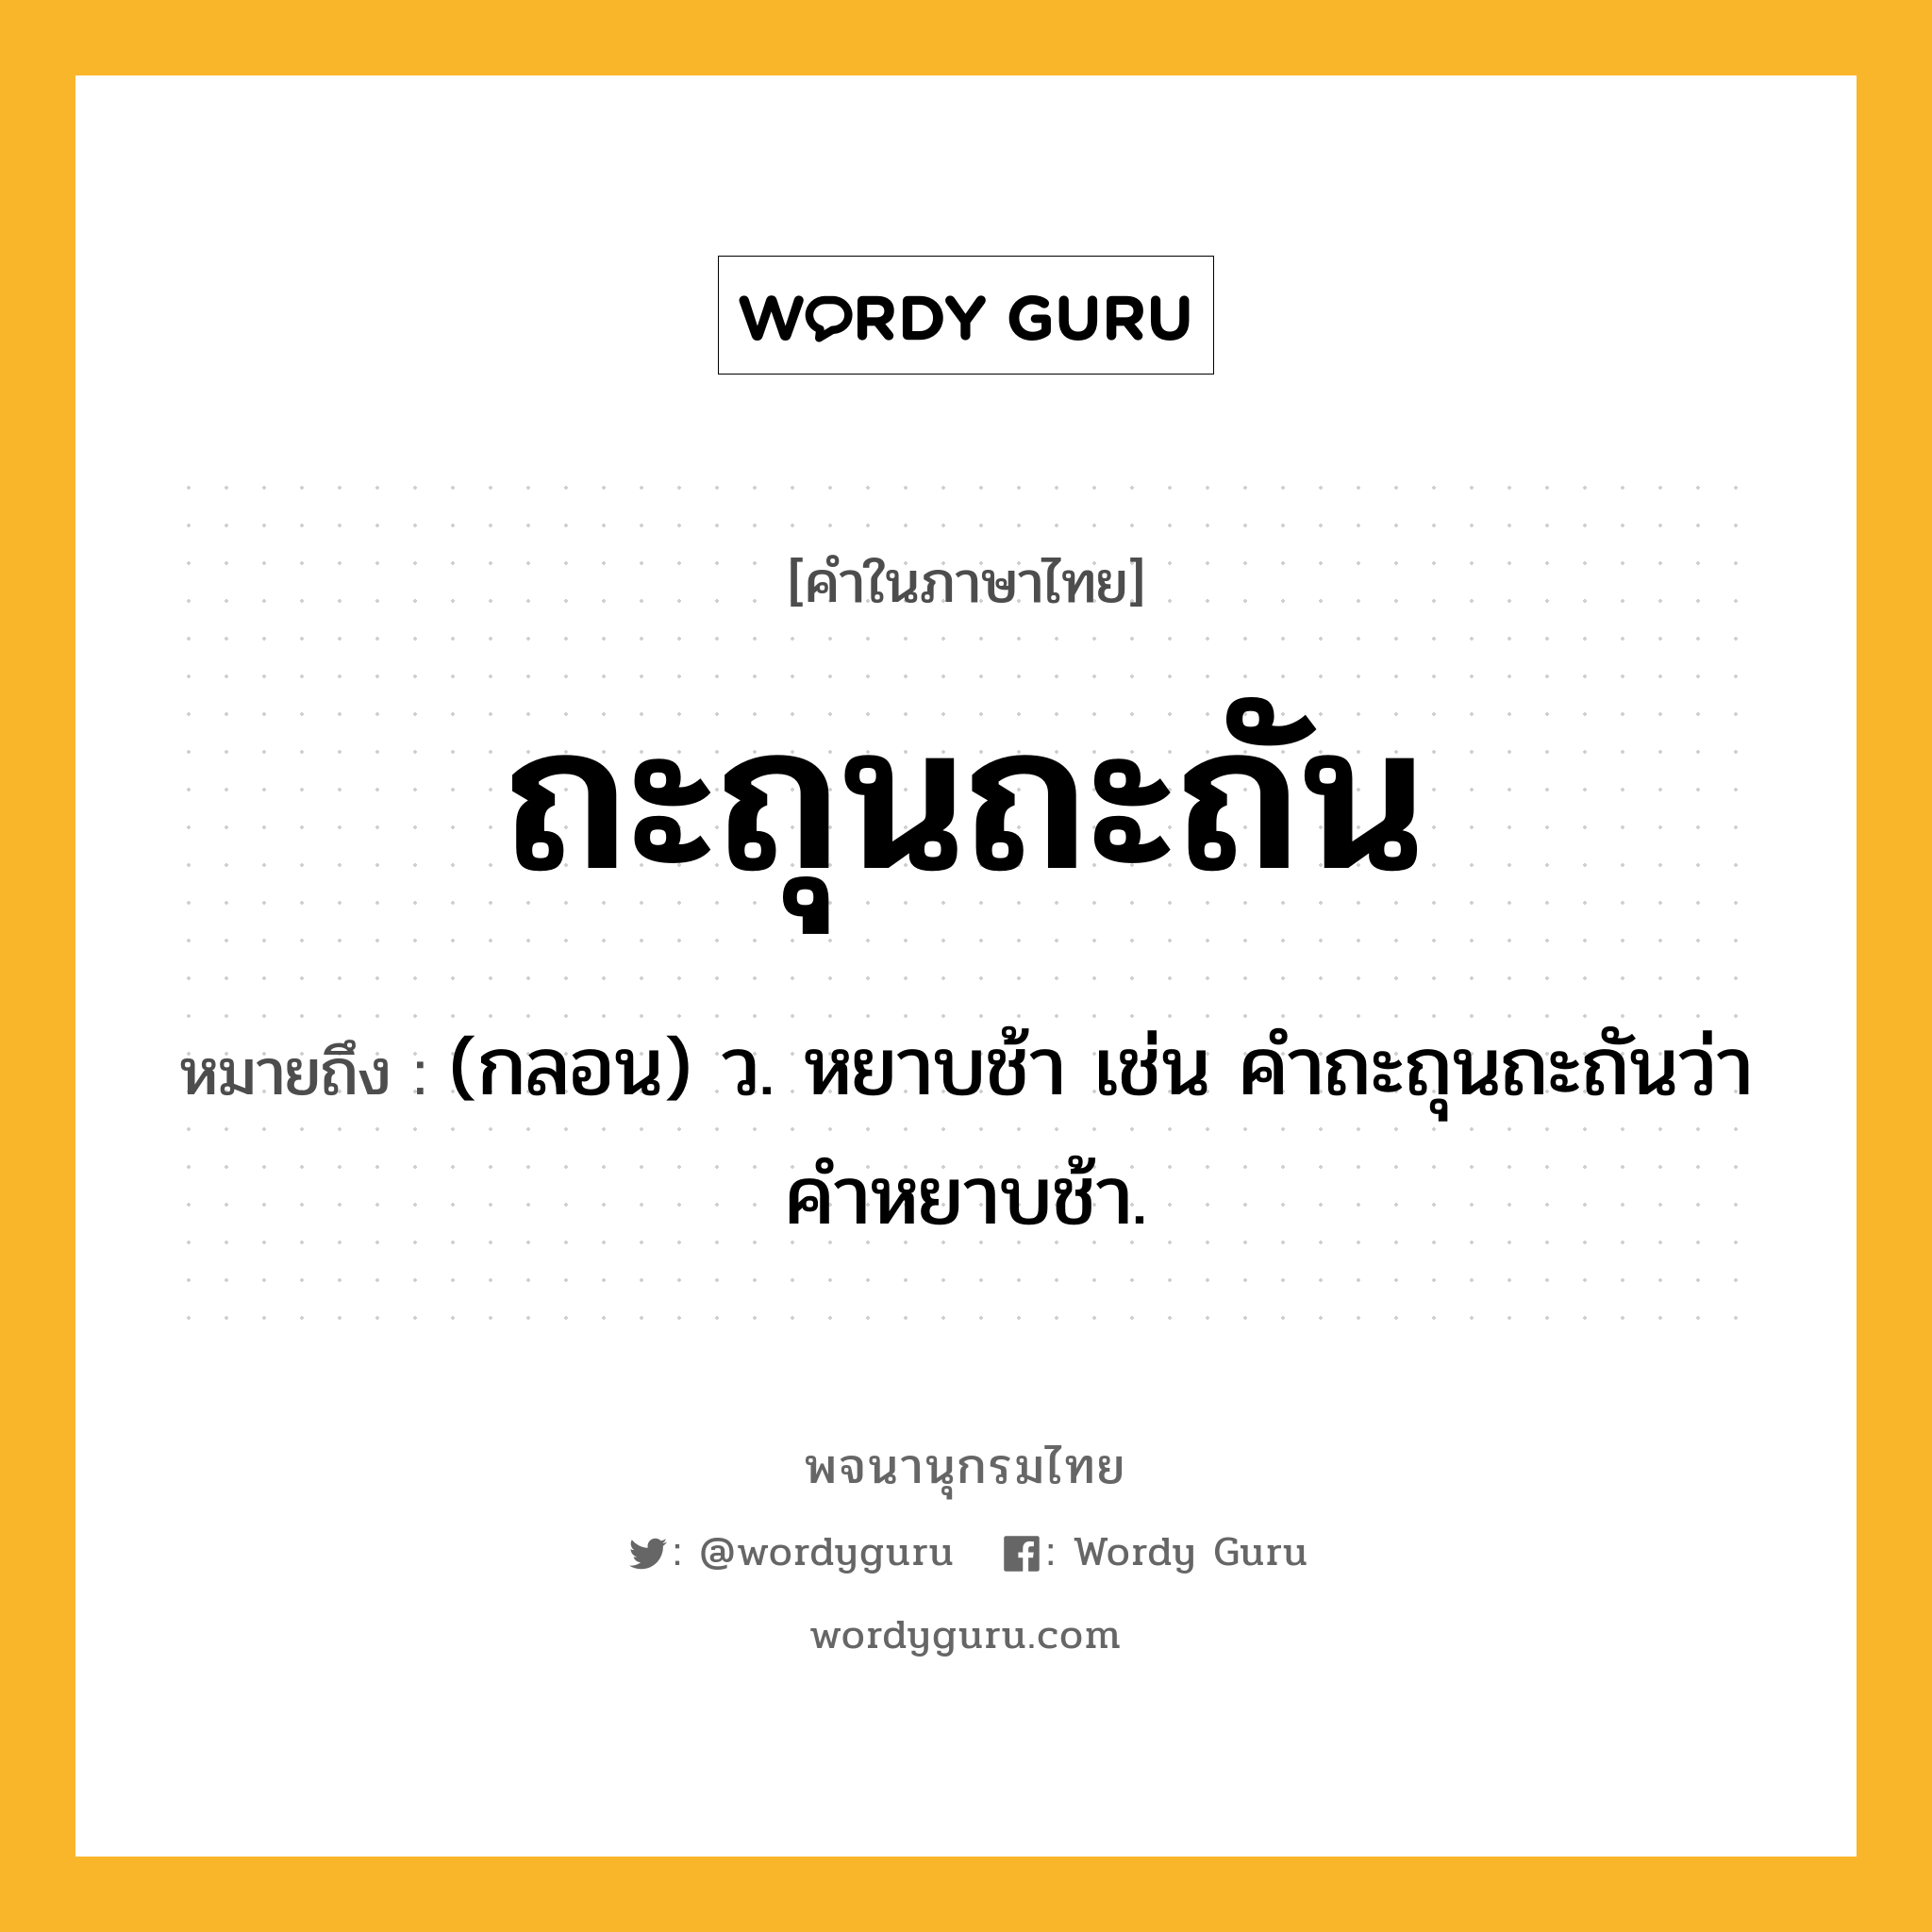 ถะถุนถะถัน หมายถึงอะไร?, คำในภาษาไทย ถะถุนถะถัน หมายถึง (กลอน) ว. หยาบช้า เช่น คําถะถุนถะถันว่า คําหยาบช้า.